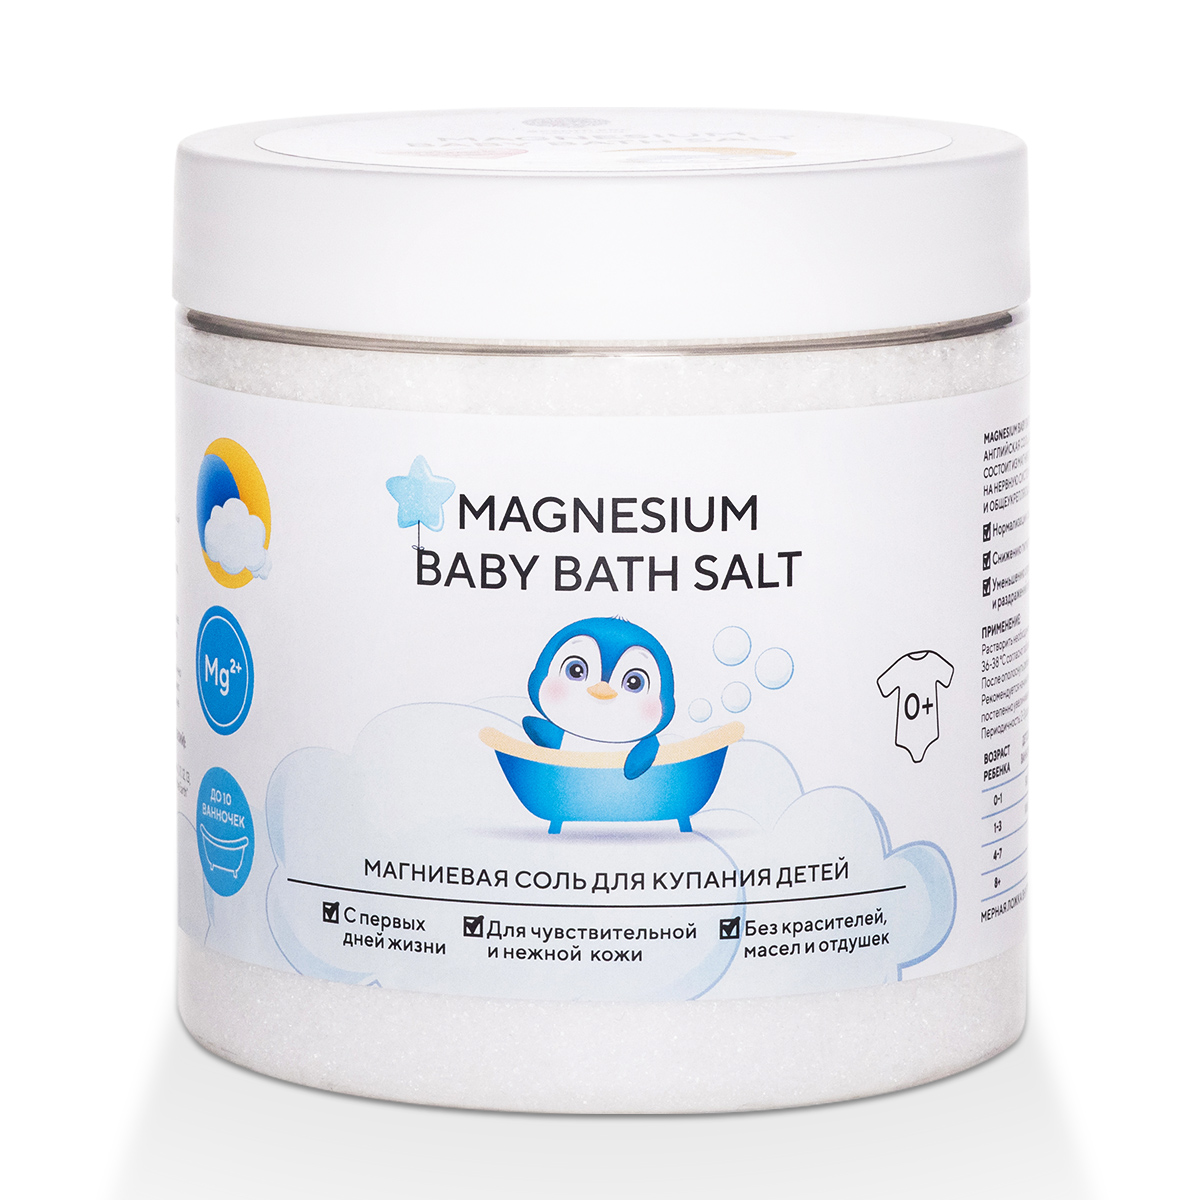 Соль магниевая Magnesium Baby Bath Salt для купания детей 500 г salt to the sea